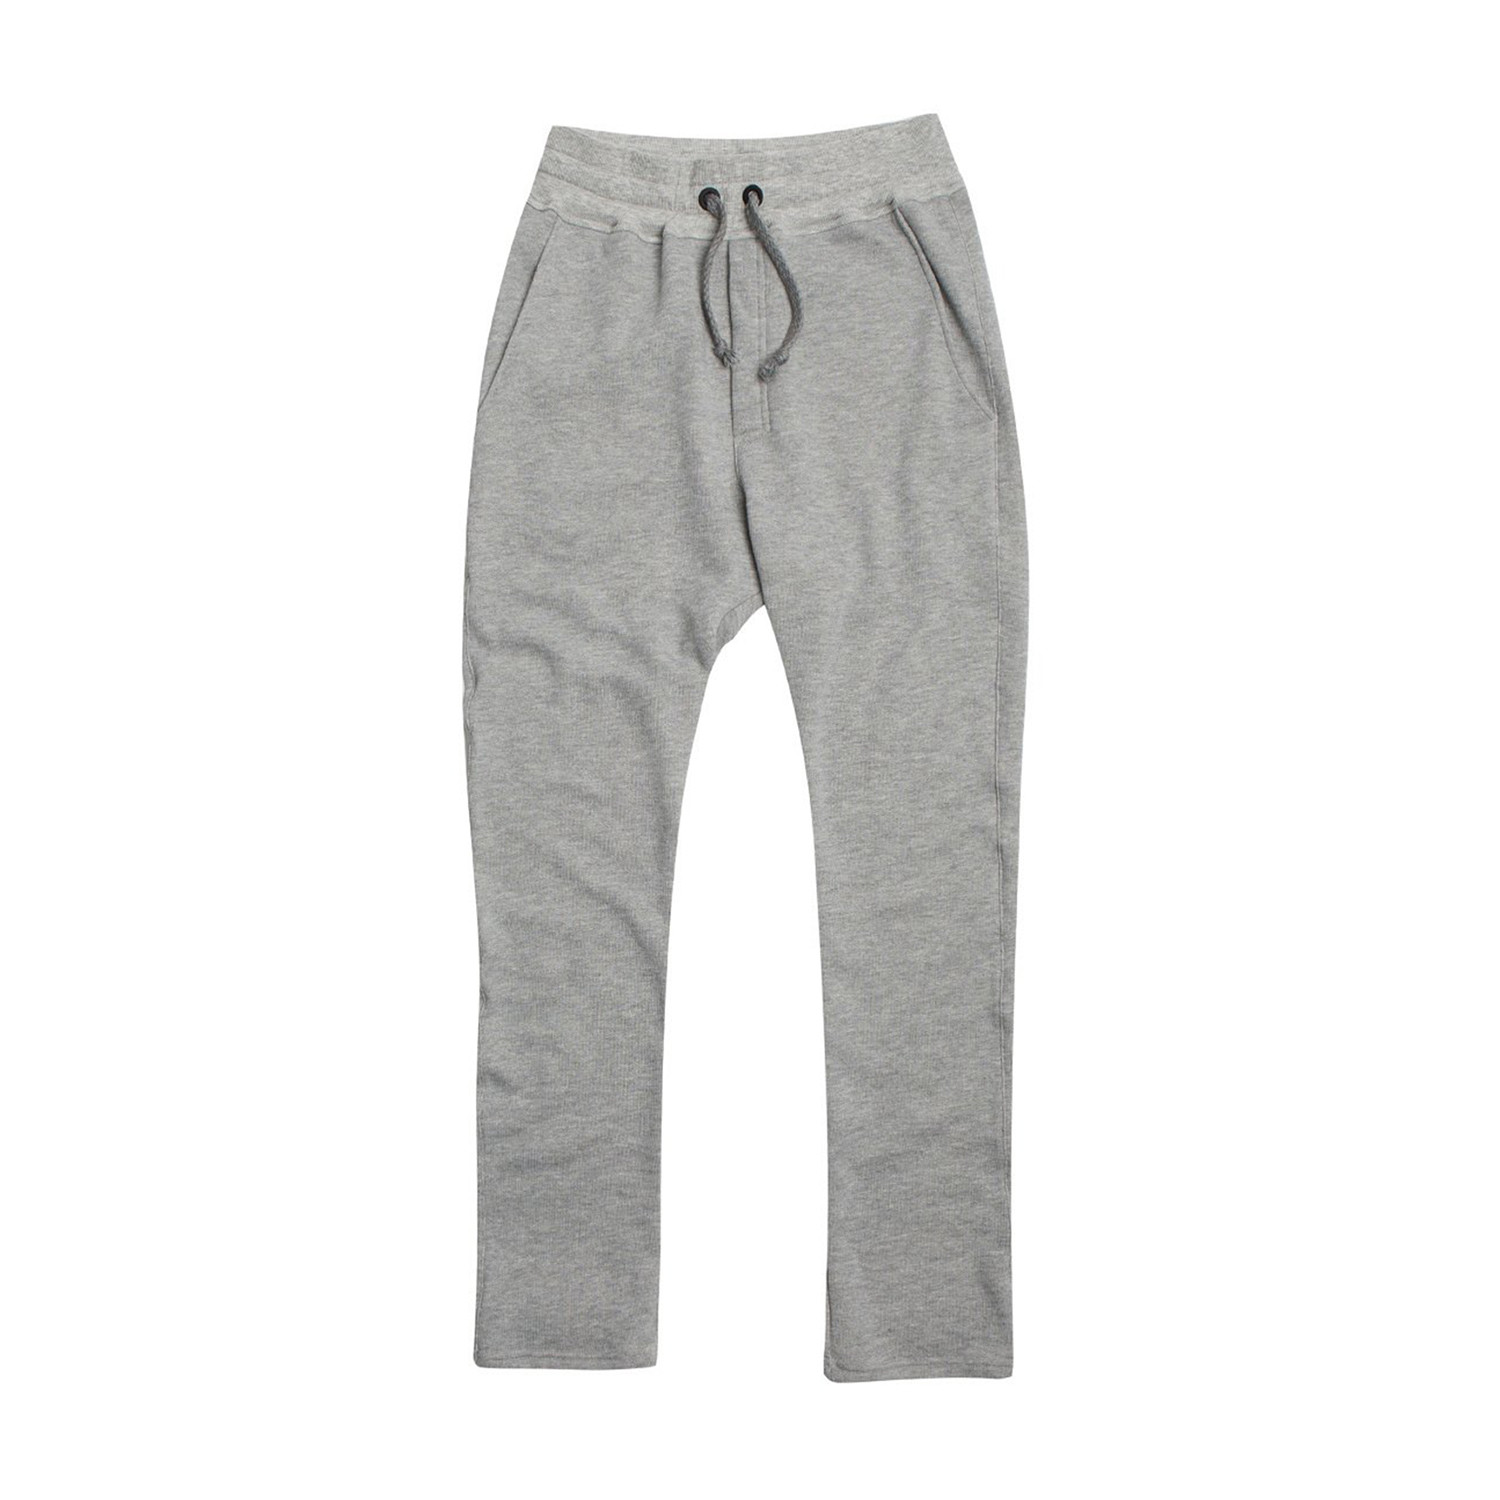 Loose Fit Cotton Sweatpants // Melange Grey (S) - The Project Garments ...